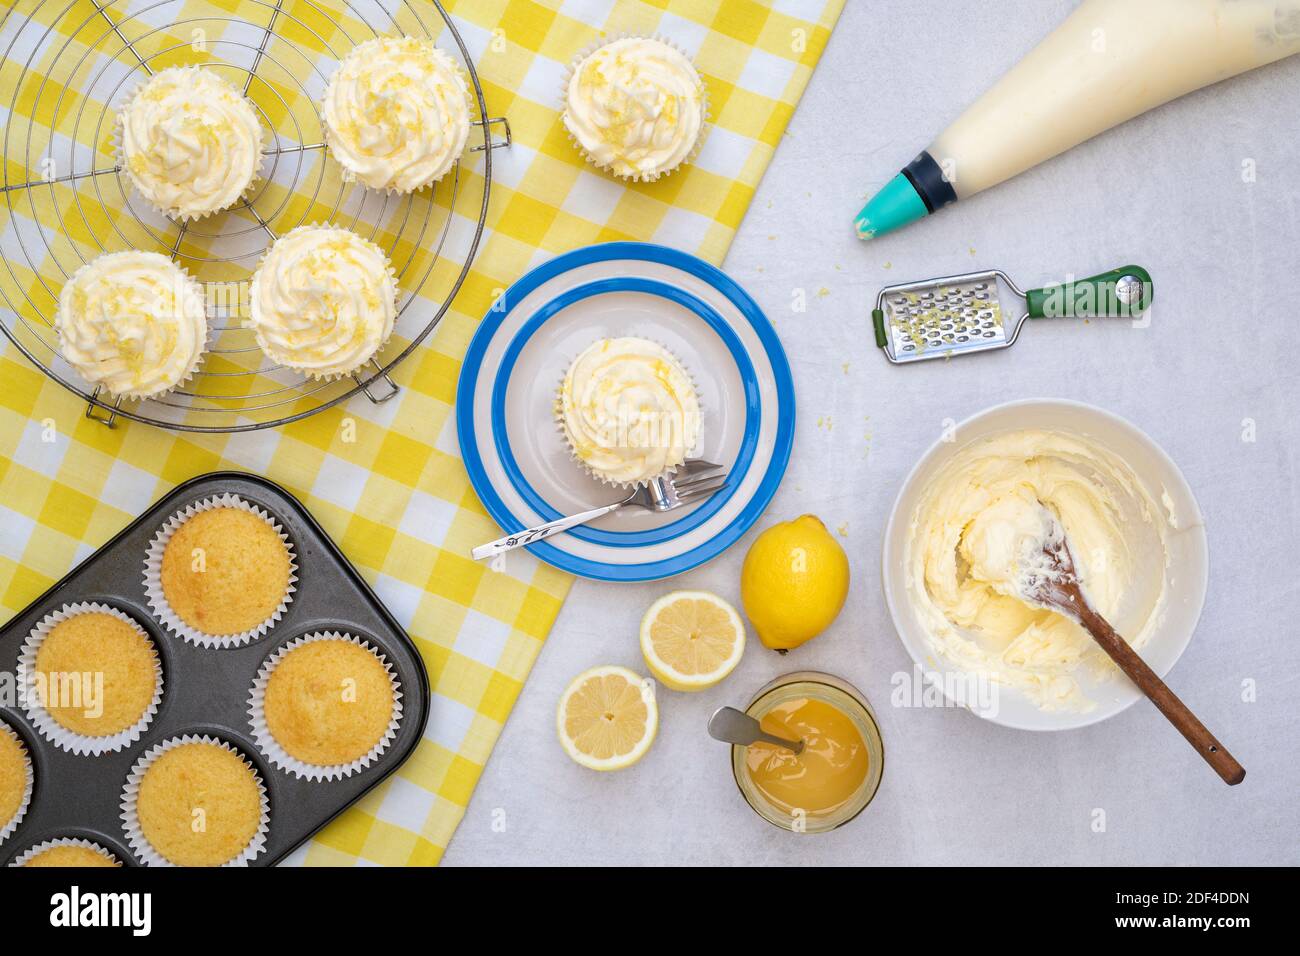 Petits gâteaux au citron faits maison avec ingrédients Banque D'Images